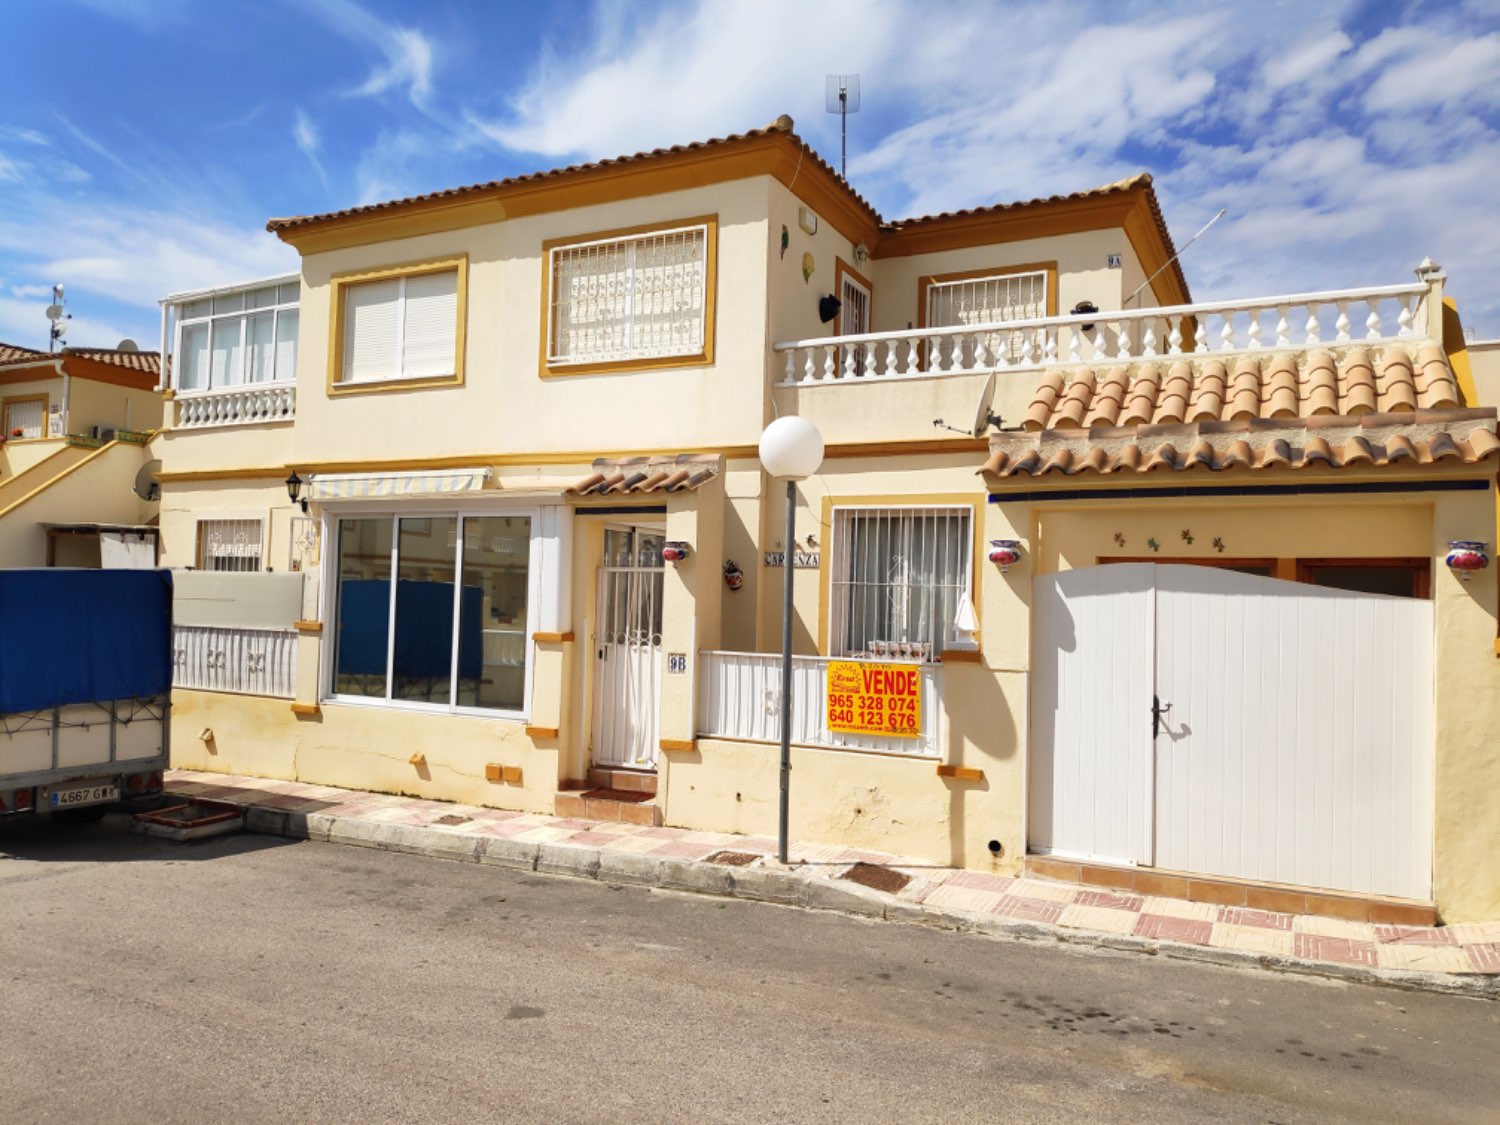 Estupendo 2 apartamentos en 1 situado en Playa flamenca ( apartamento 2 dormitorios 1 baño y 1 dormitorio y 1 baño )